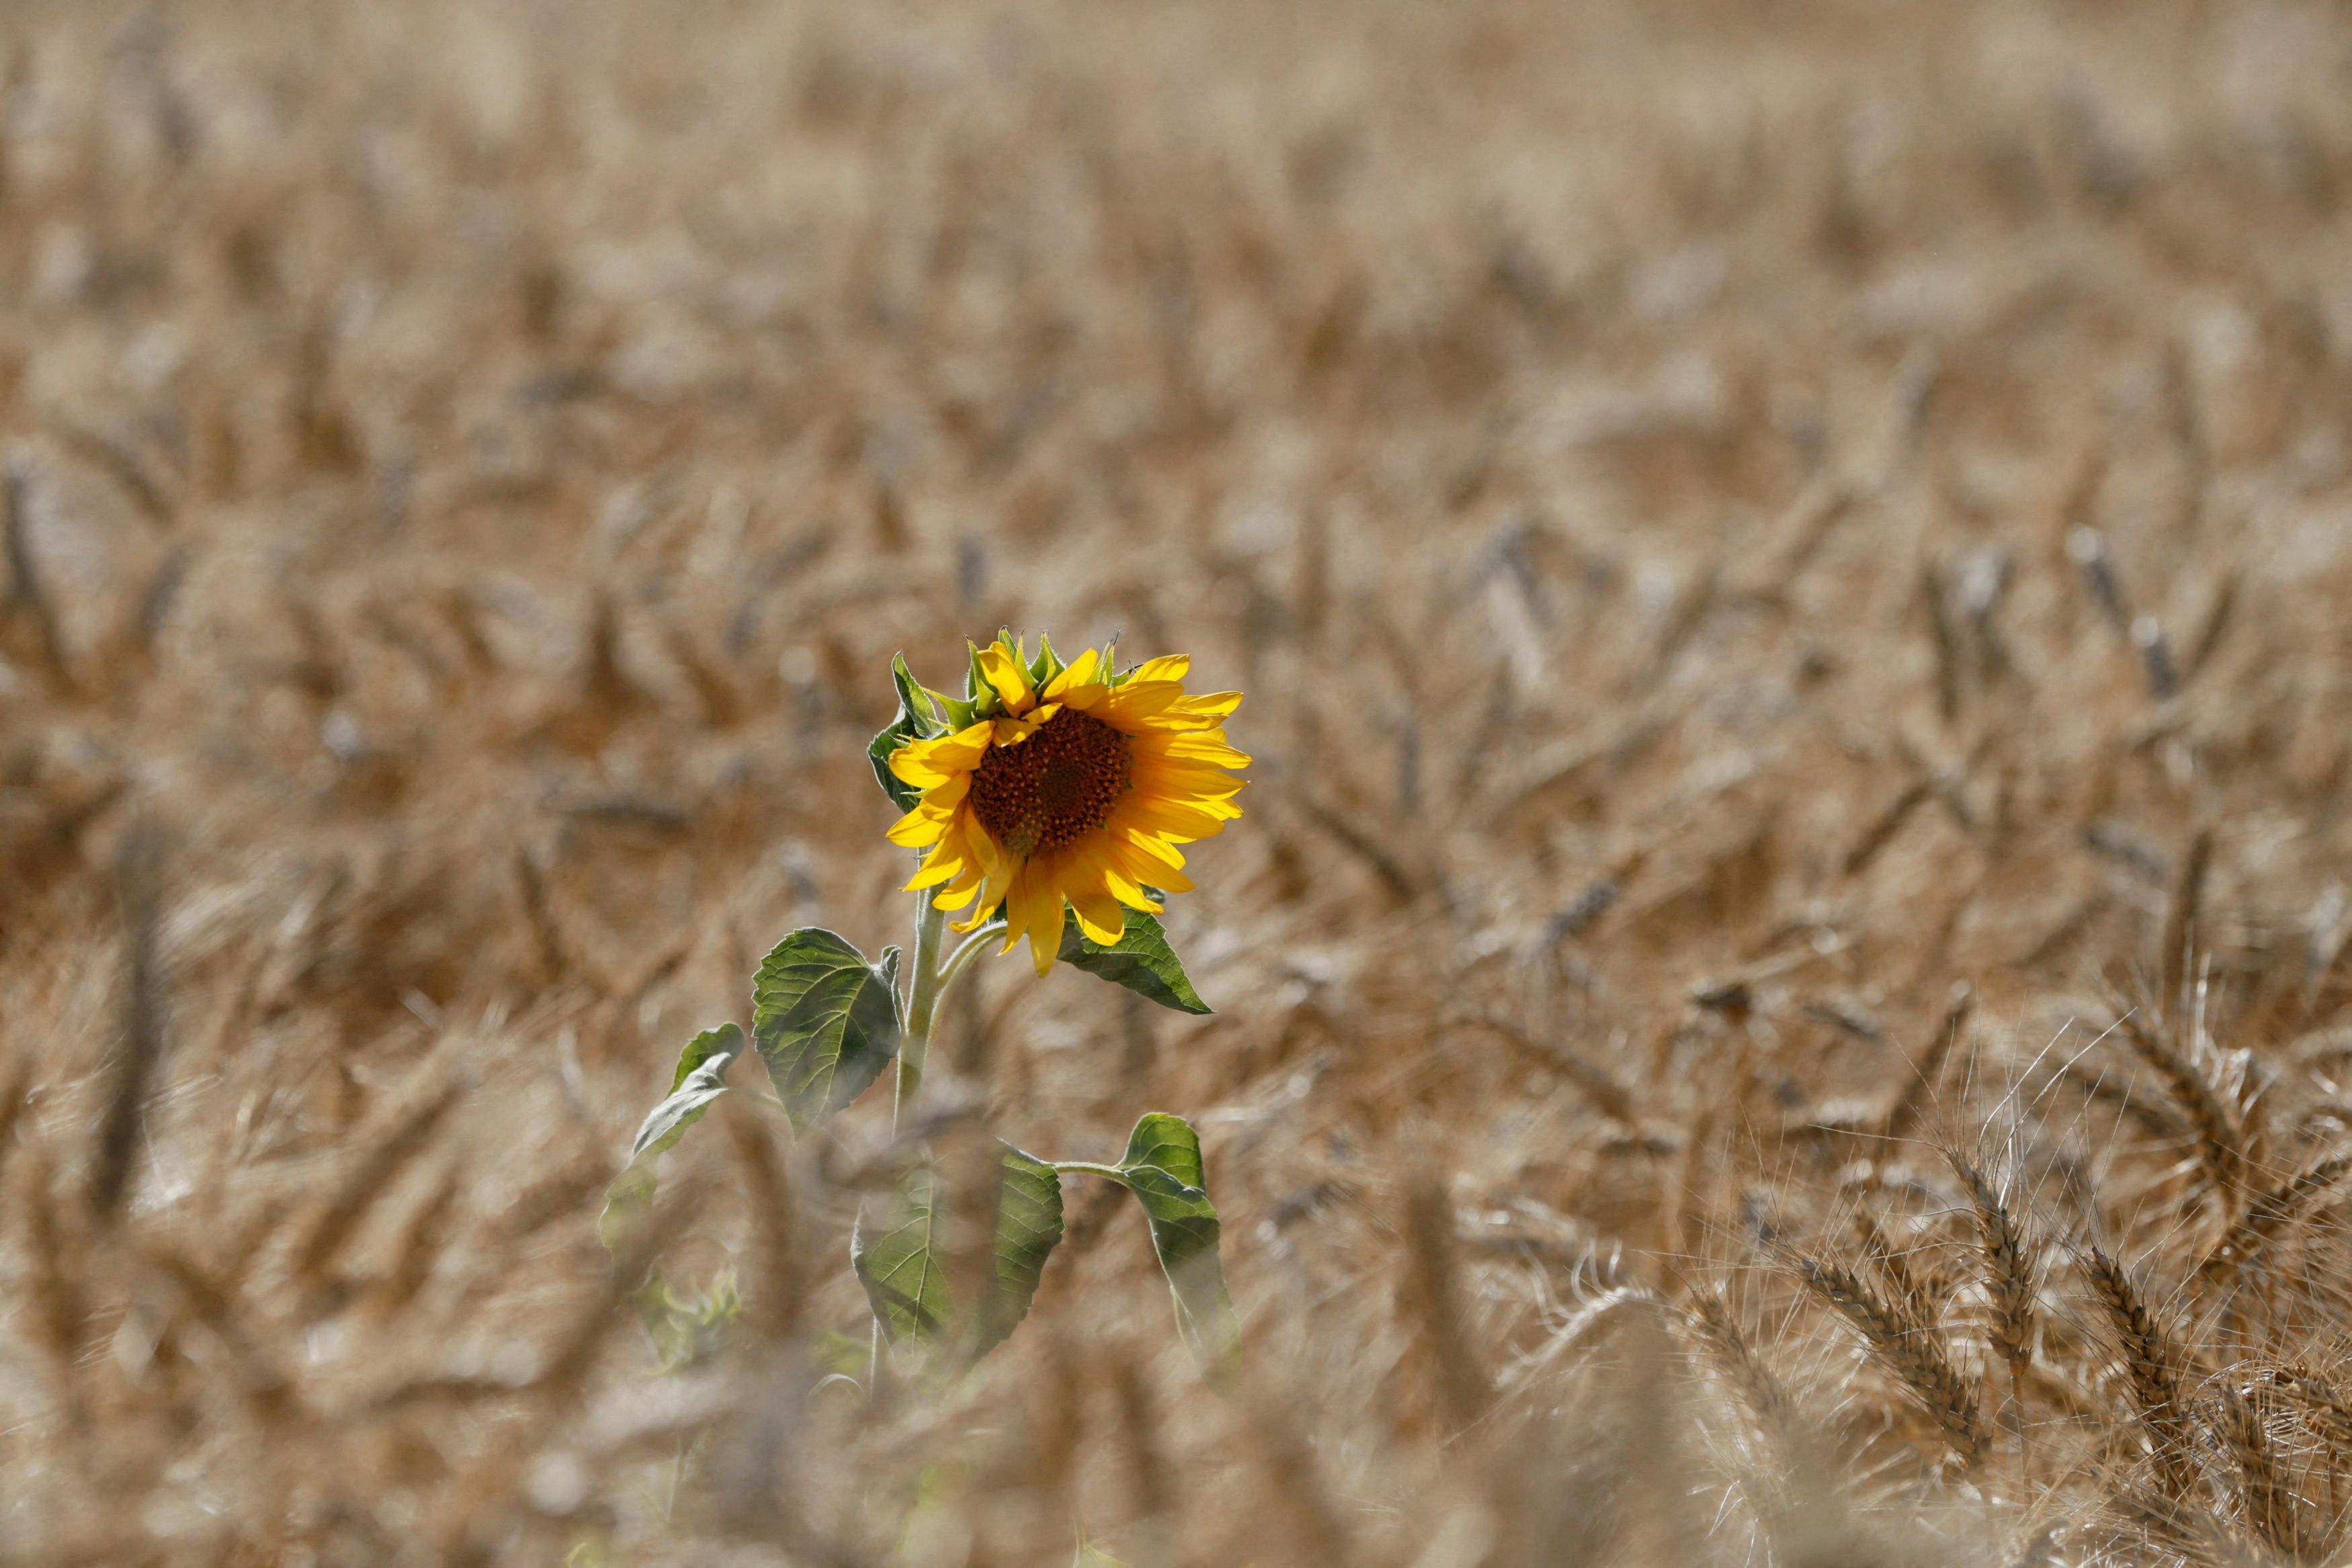 Sunflower is seen on wheat field in Kyiv region